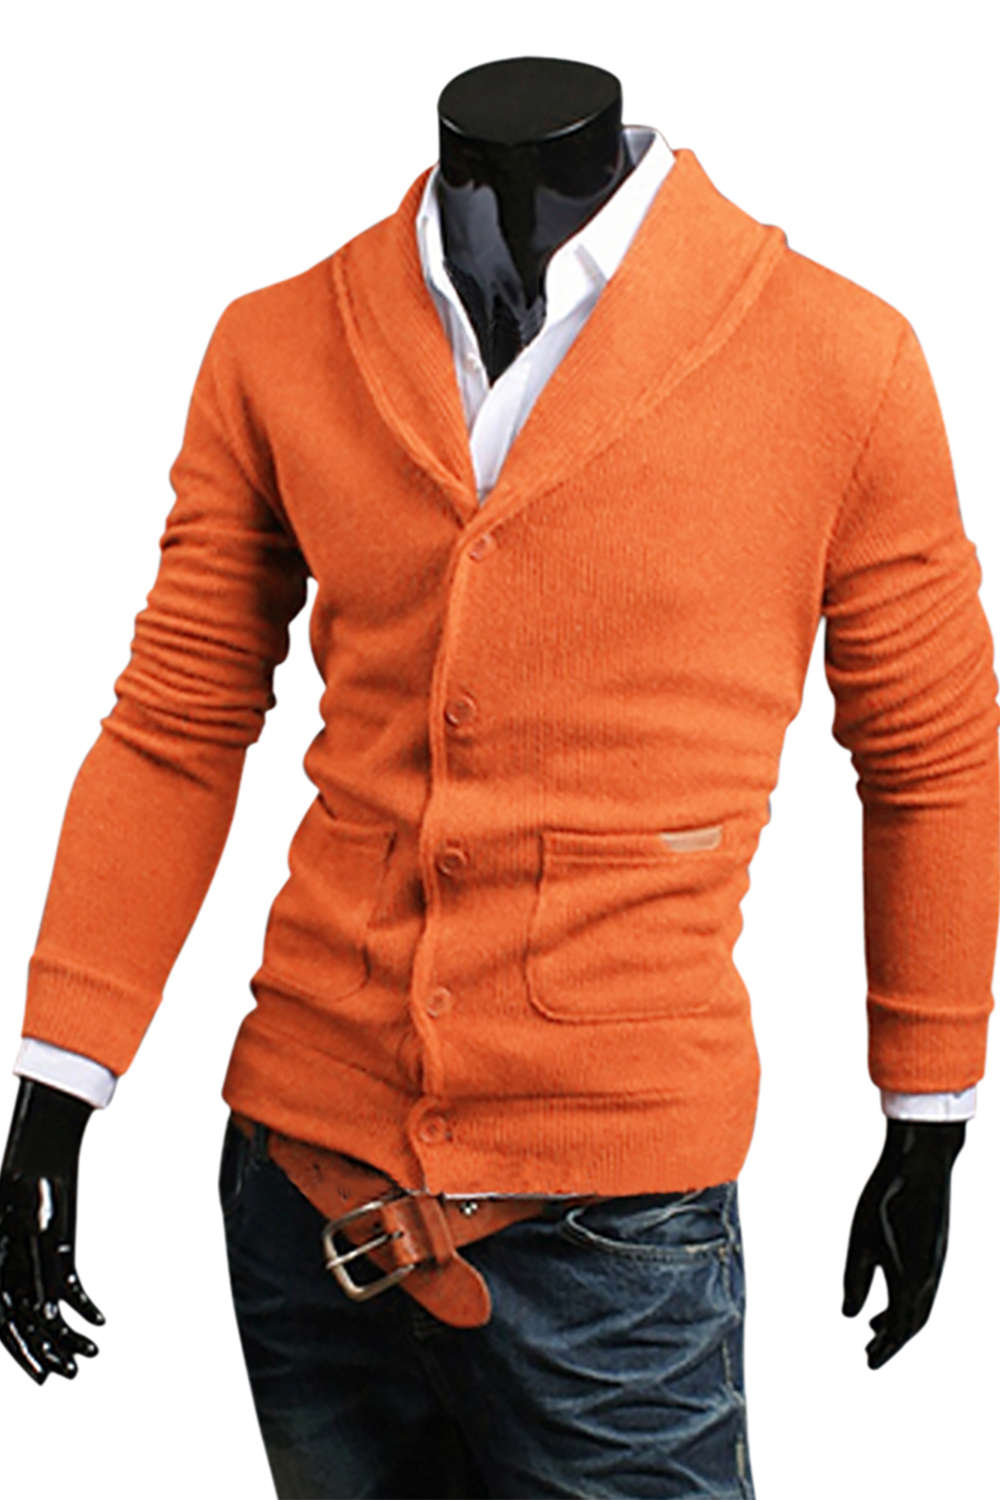 Iyasson Men's Shawl Collar Cardigan Sweater